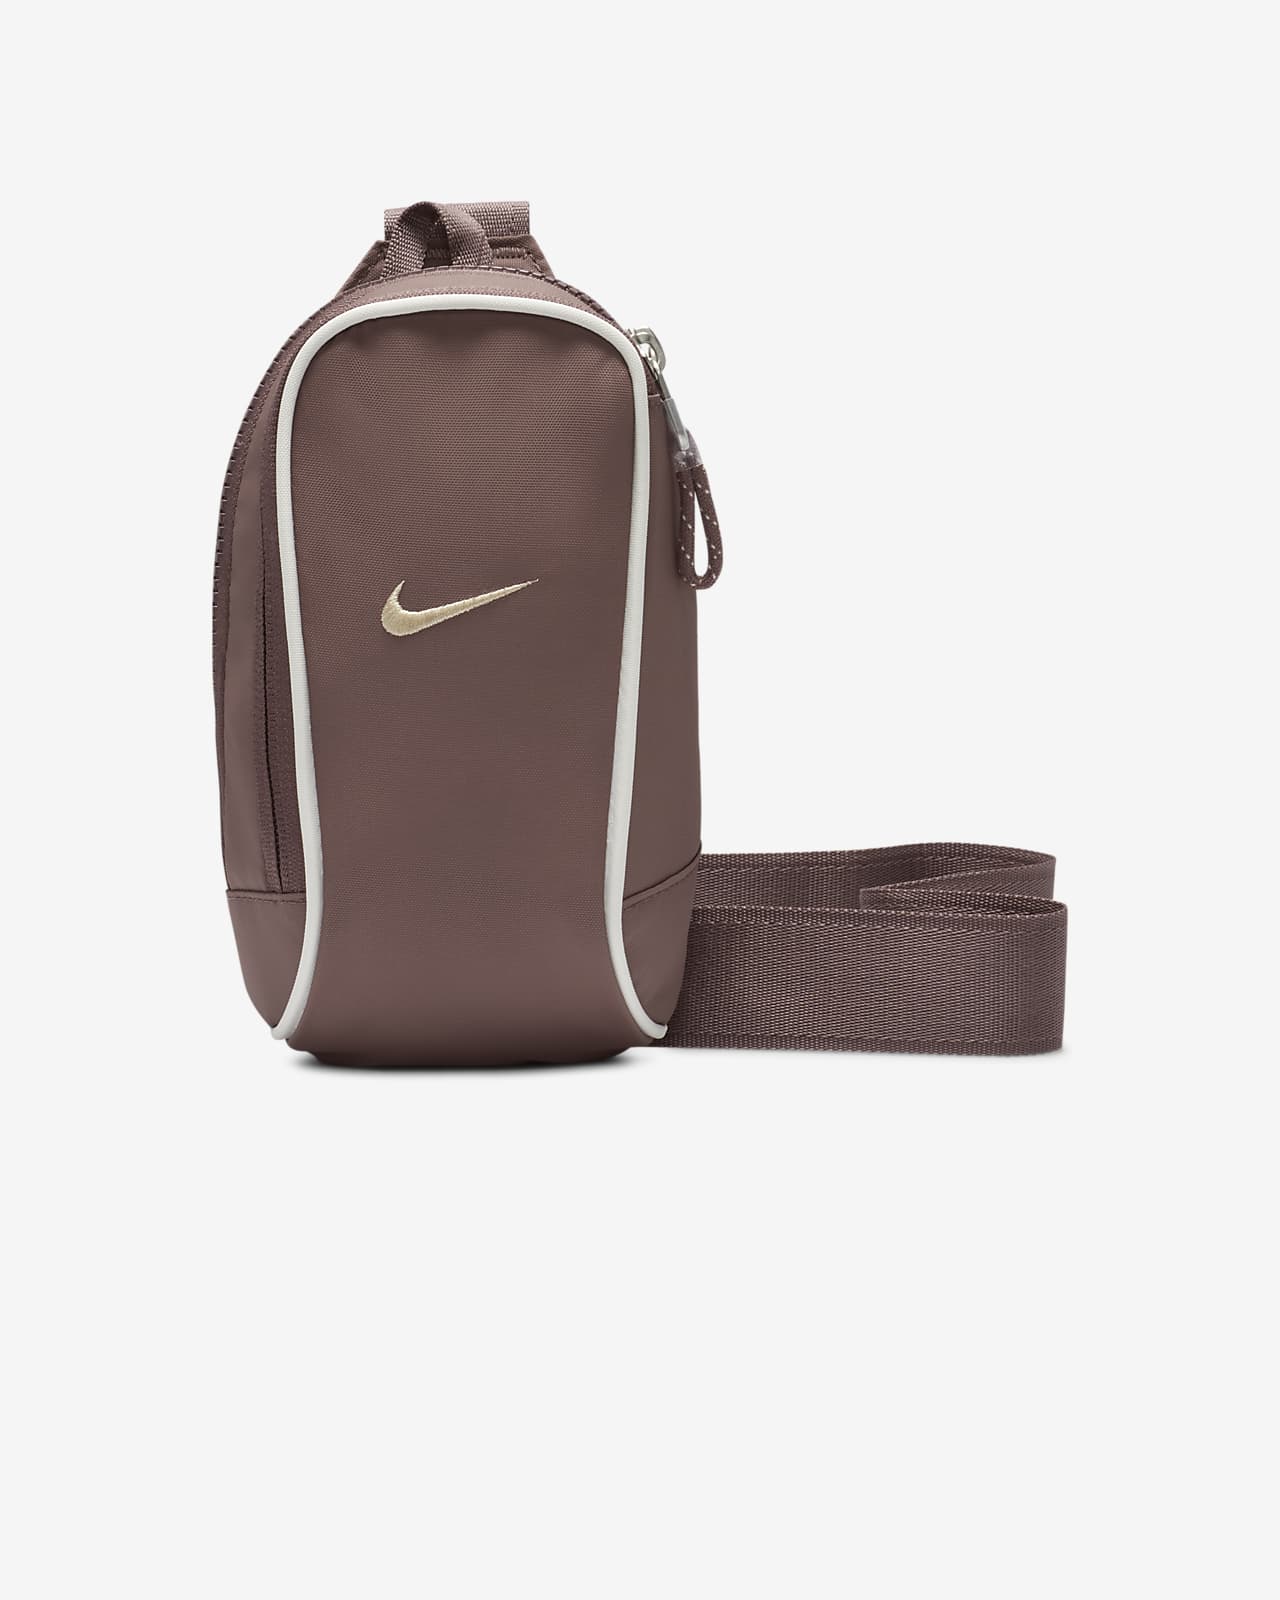 Nike, Bags, Vintage Nike Cross Body Bag